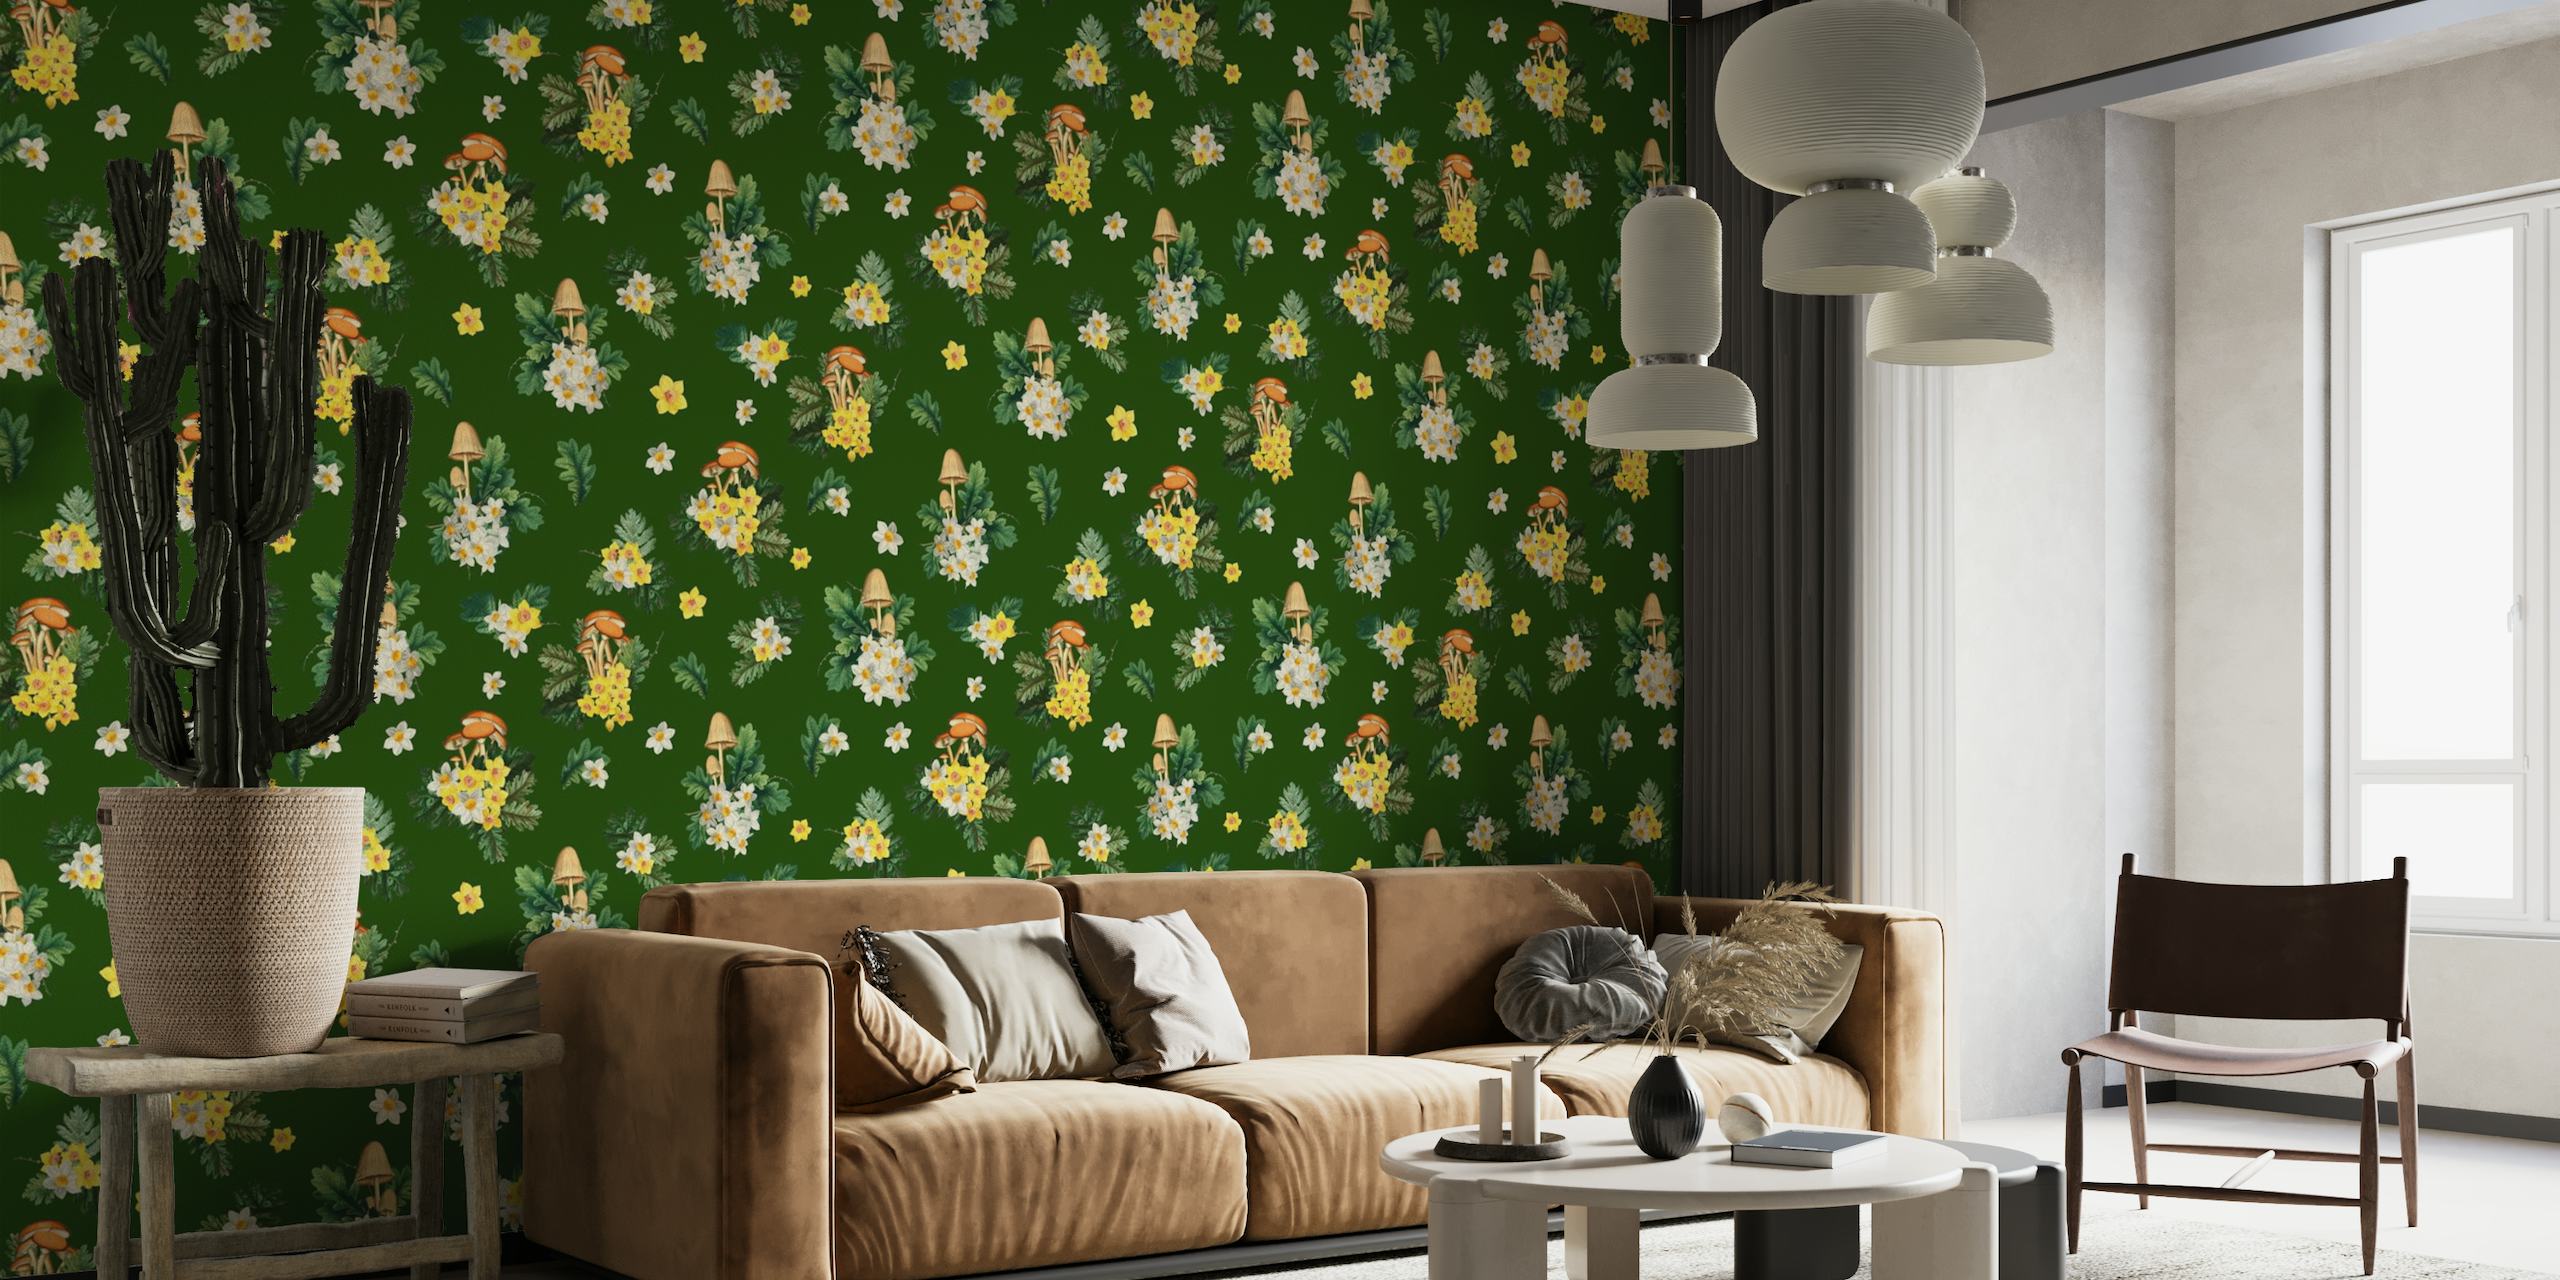 Havainnollistava seinämaalaus sienistä ja luonnonkukista vihreällä taustalla, täydellinen luontoaiheiseen huoneeseen.